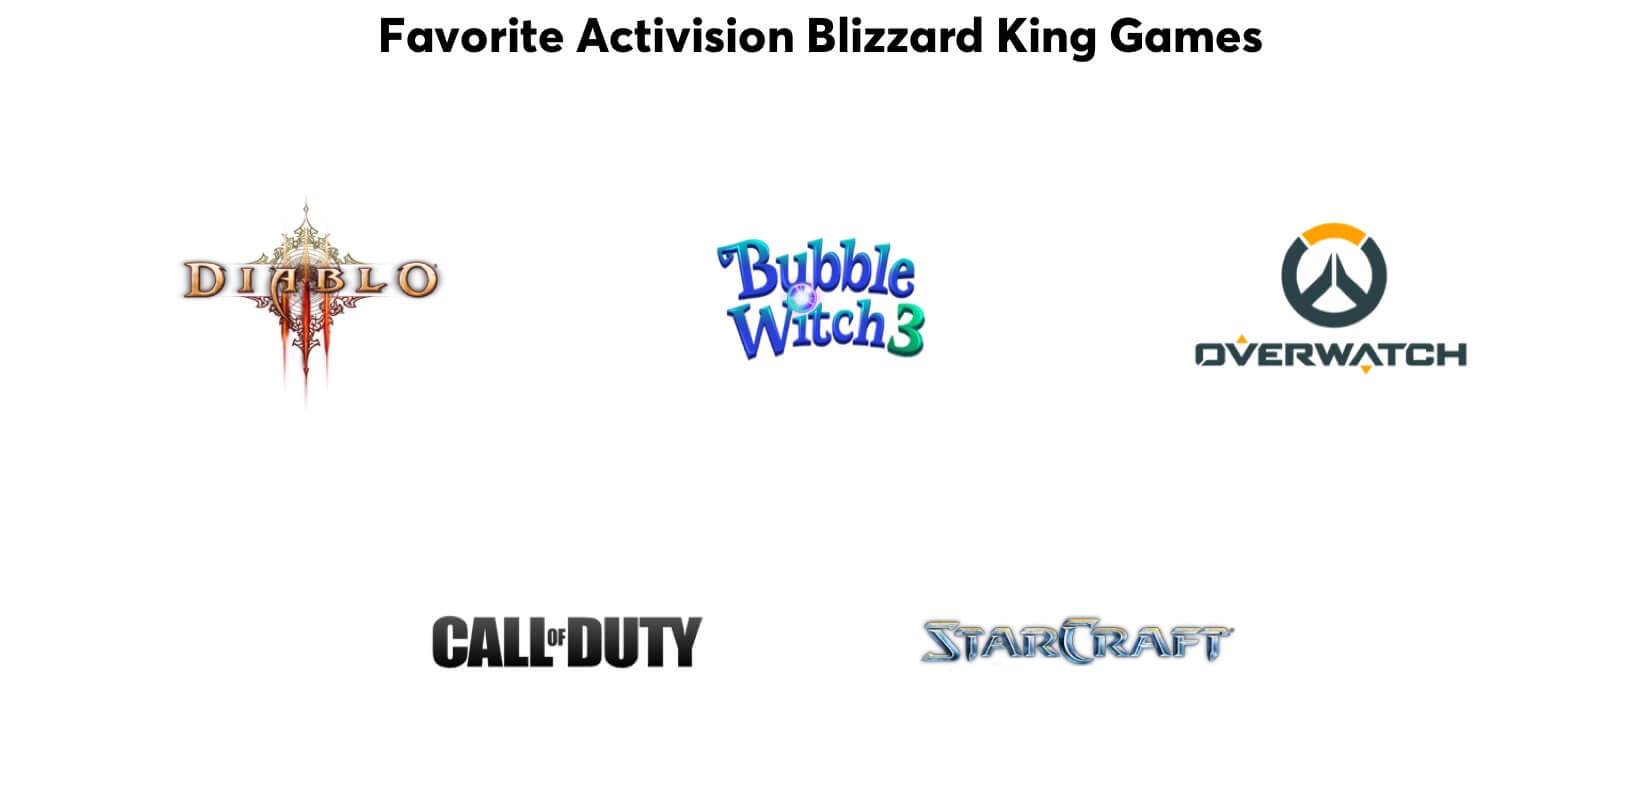 Les jeux préférés des Mode-de-vistes : Diablo, Bubble Witch, Overwatch, Call of Duty, et StarCraft